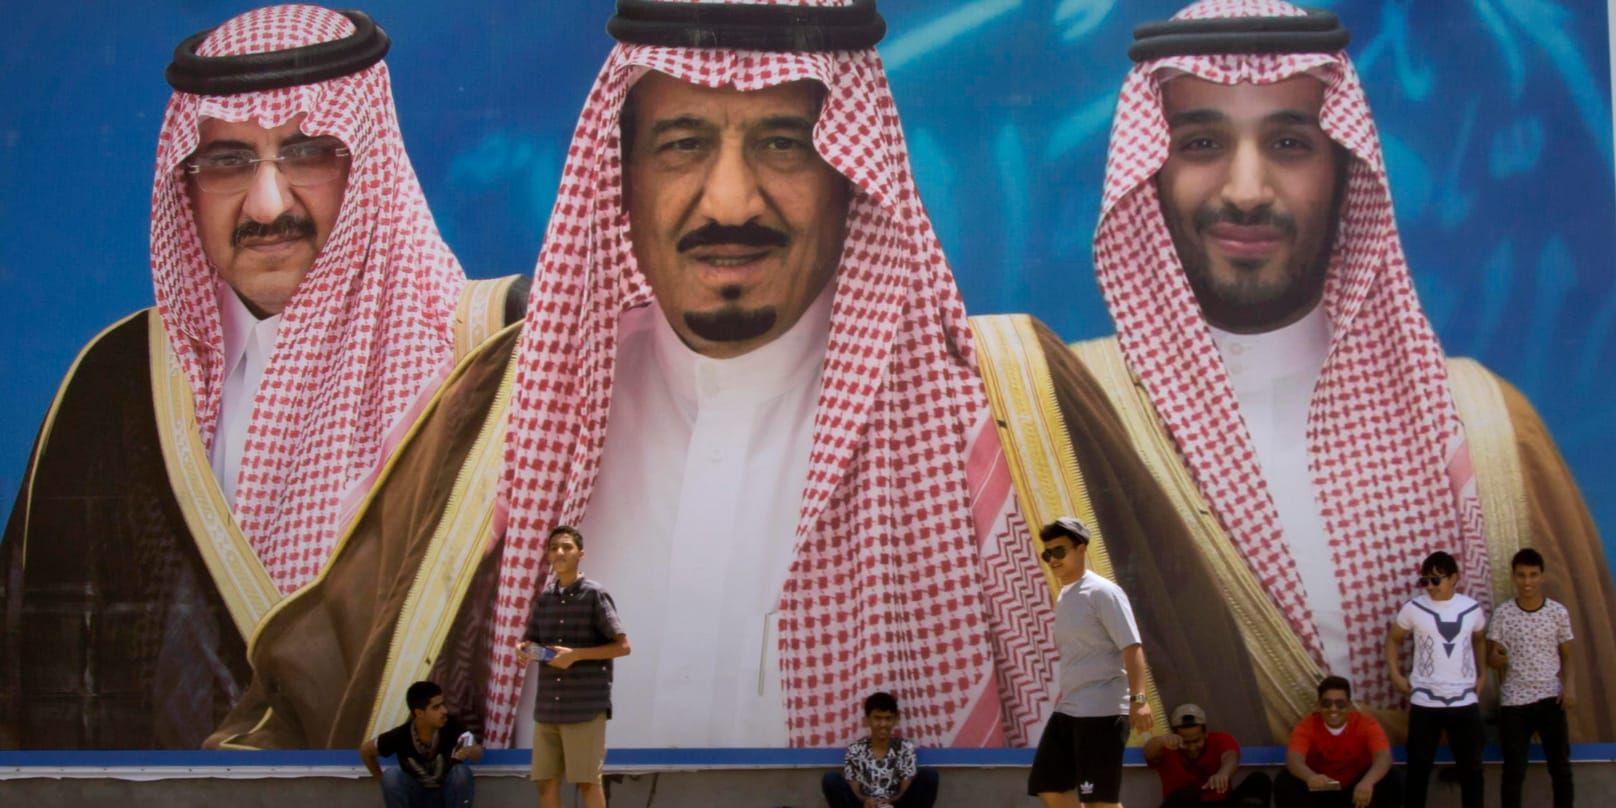 Saudiarabien skakas av palatsintriger. På bilden syns kung Salman i mitten, omgiven av kronprins Mohammed bin Salman (till höger) som norpade sin titel av Mohammed bin Nayef (till vänster).